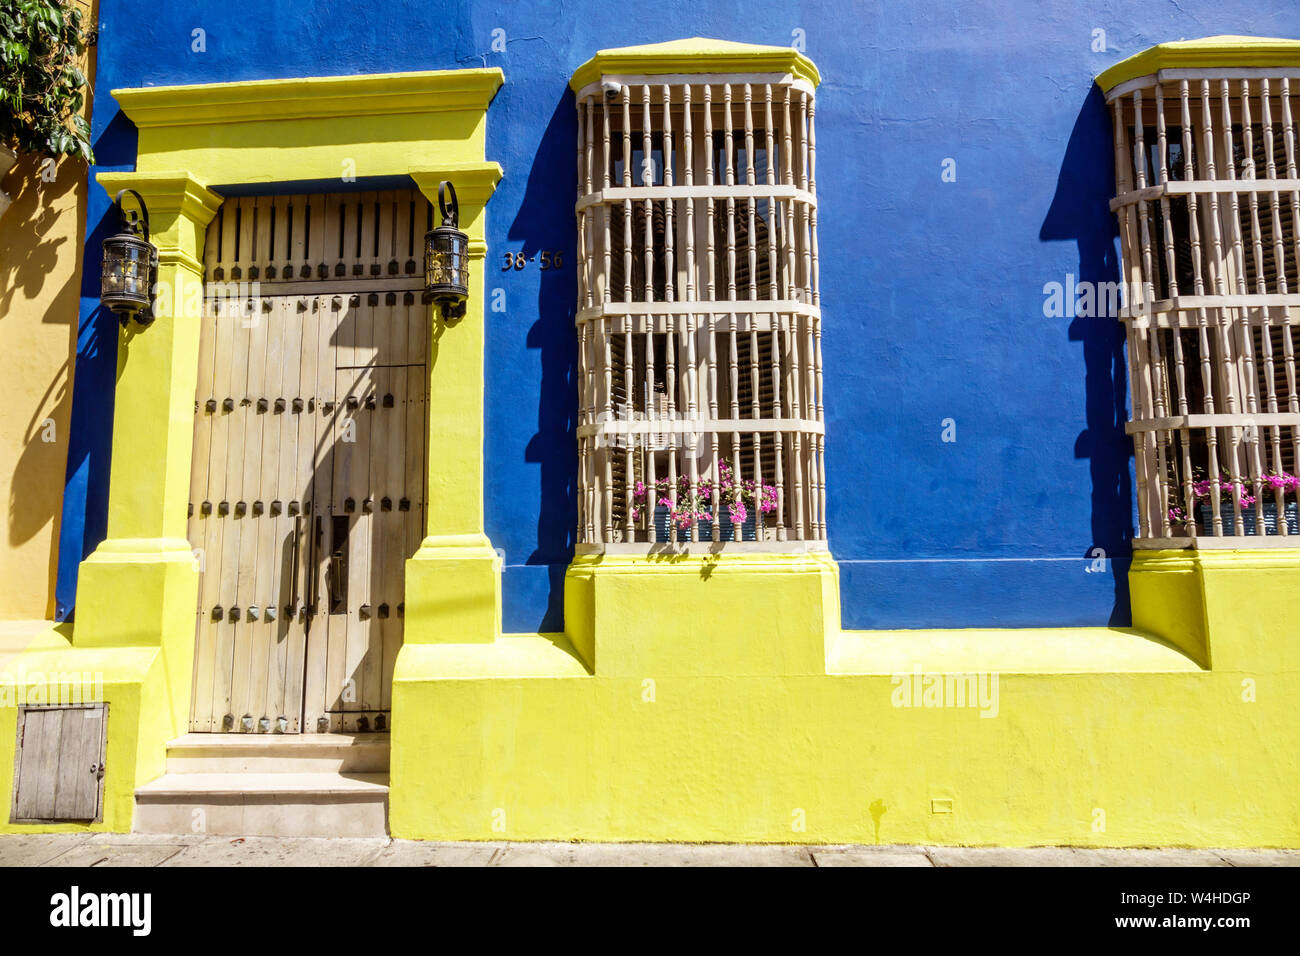 Kolumbien Cartagena Altummauerte Altstadt historisches Zentrum restauriert kolonialen Haus Architektur Fassade helle Farben gelb blau Holz Fenster gr Stockfoto